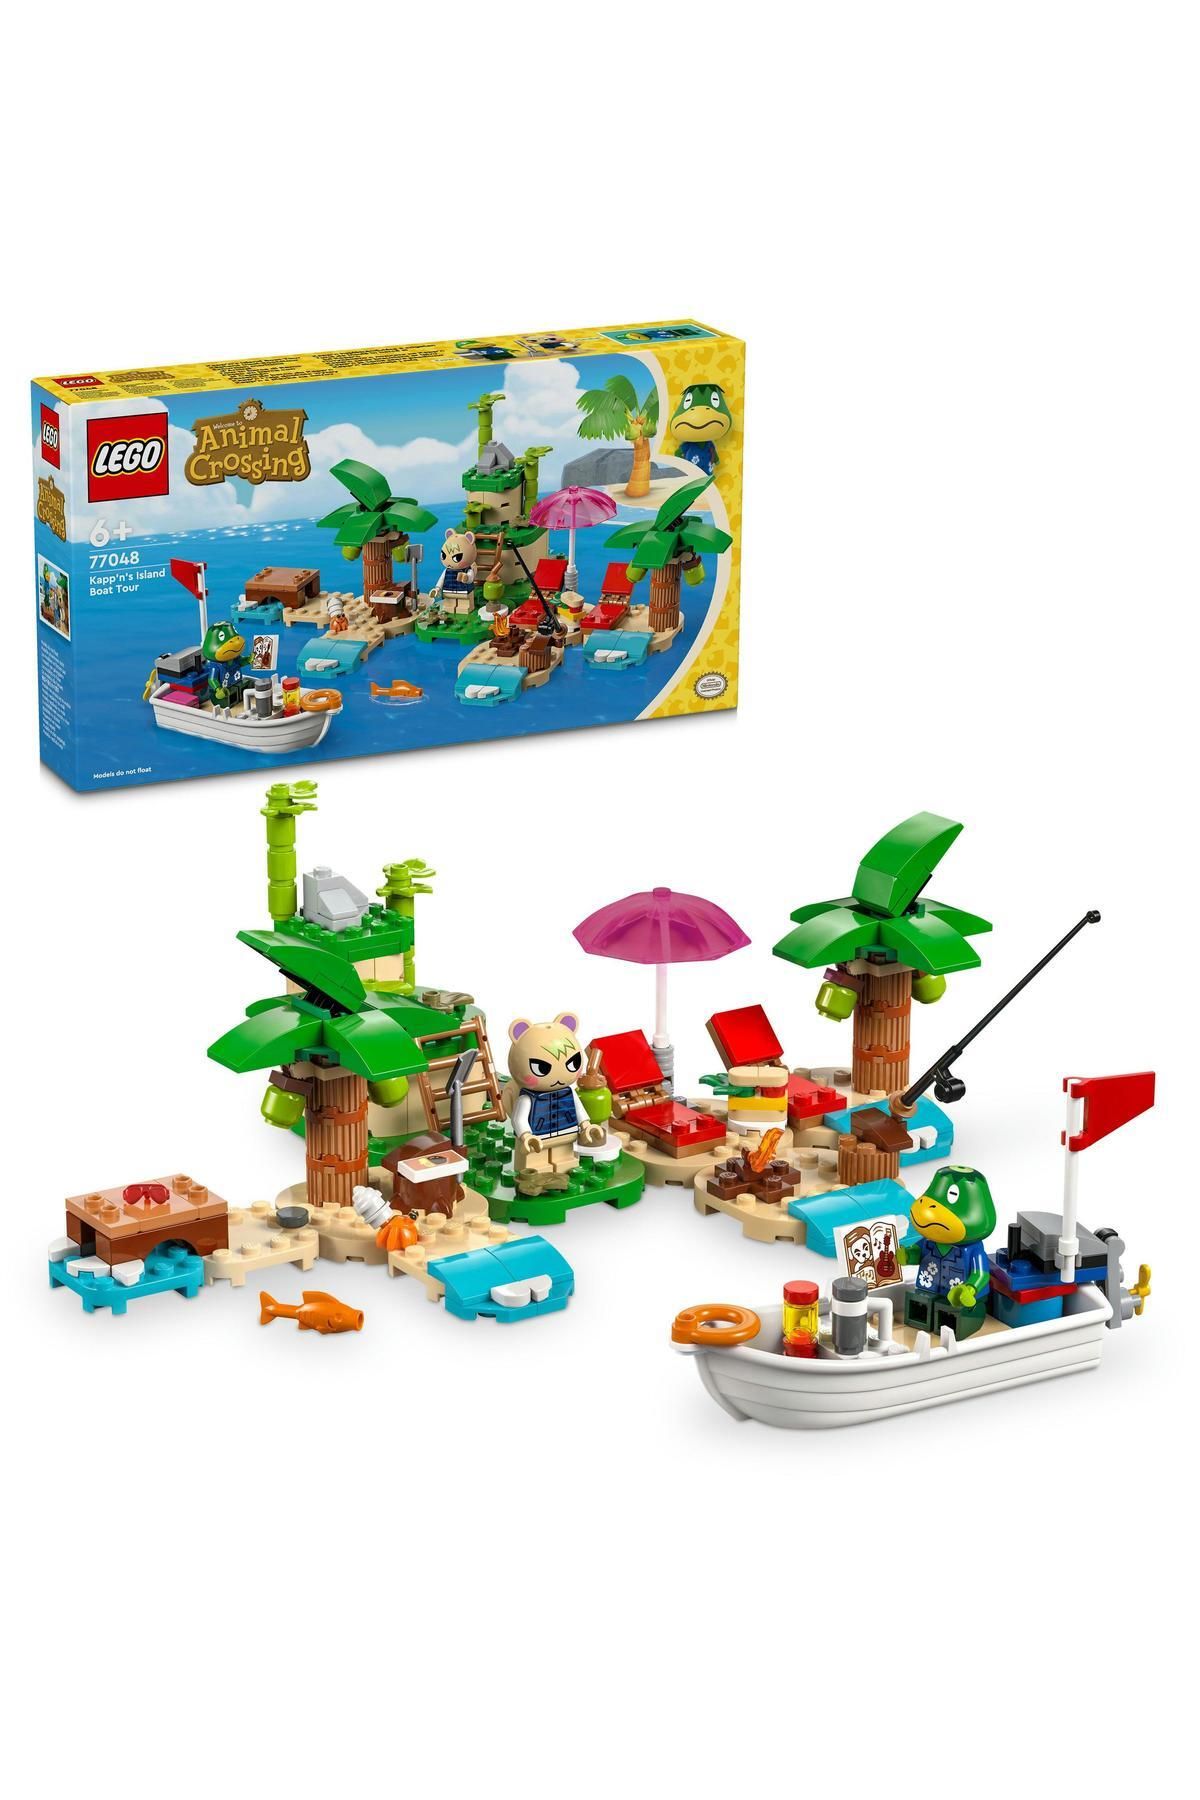 LEGO ® Animal Crossing™ Kapp'n Ada Tekne Turunda 77048 - 6 Yaş ve Üzeri İçin Yapım Seti (233 Parça)